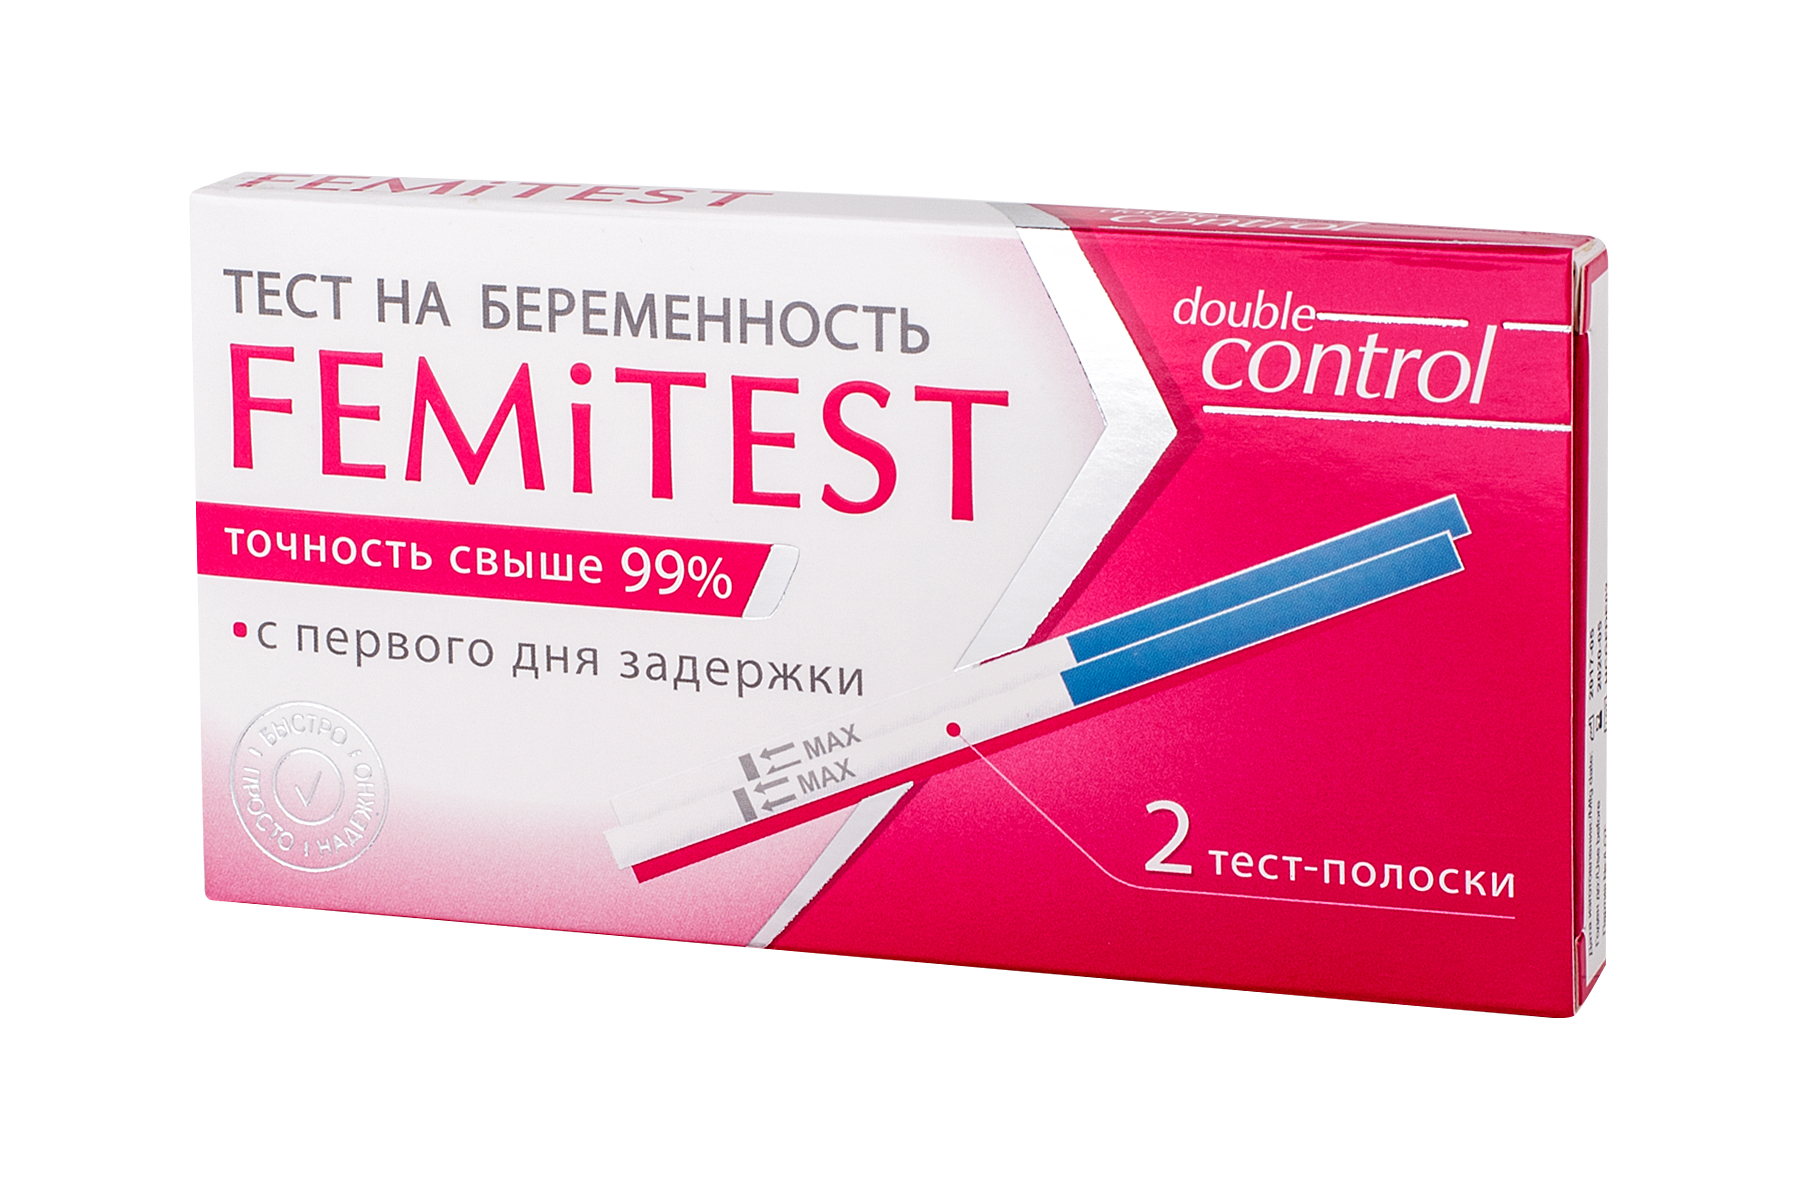 Тест EMiTEST Double control для определения беременности тест-полоска 2 шт.